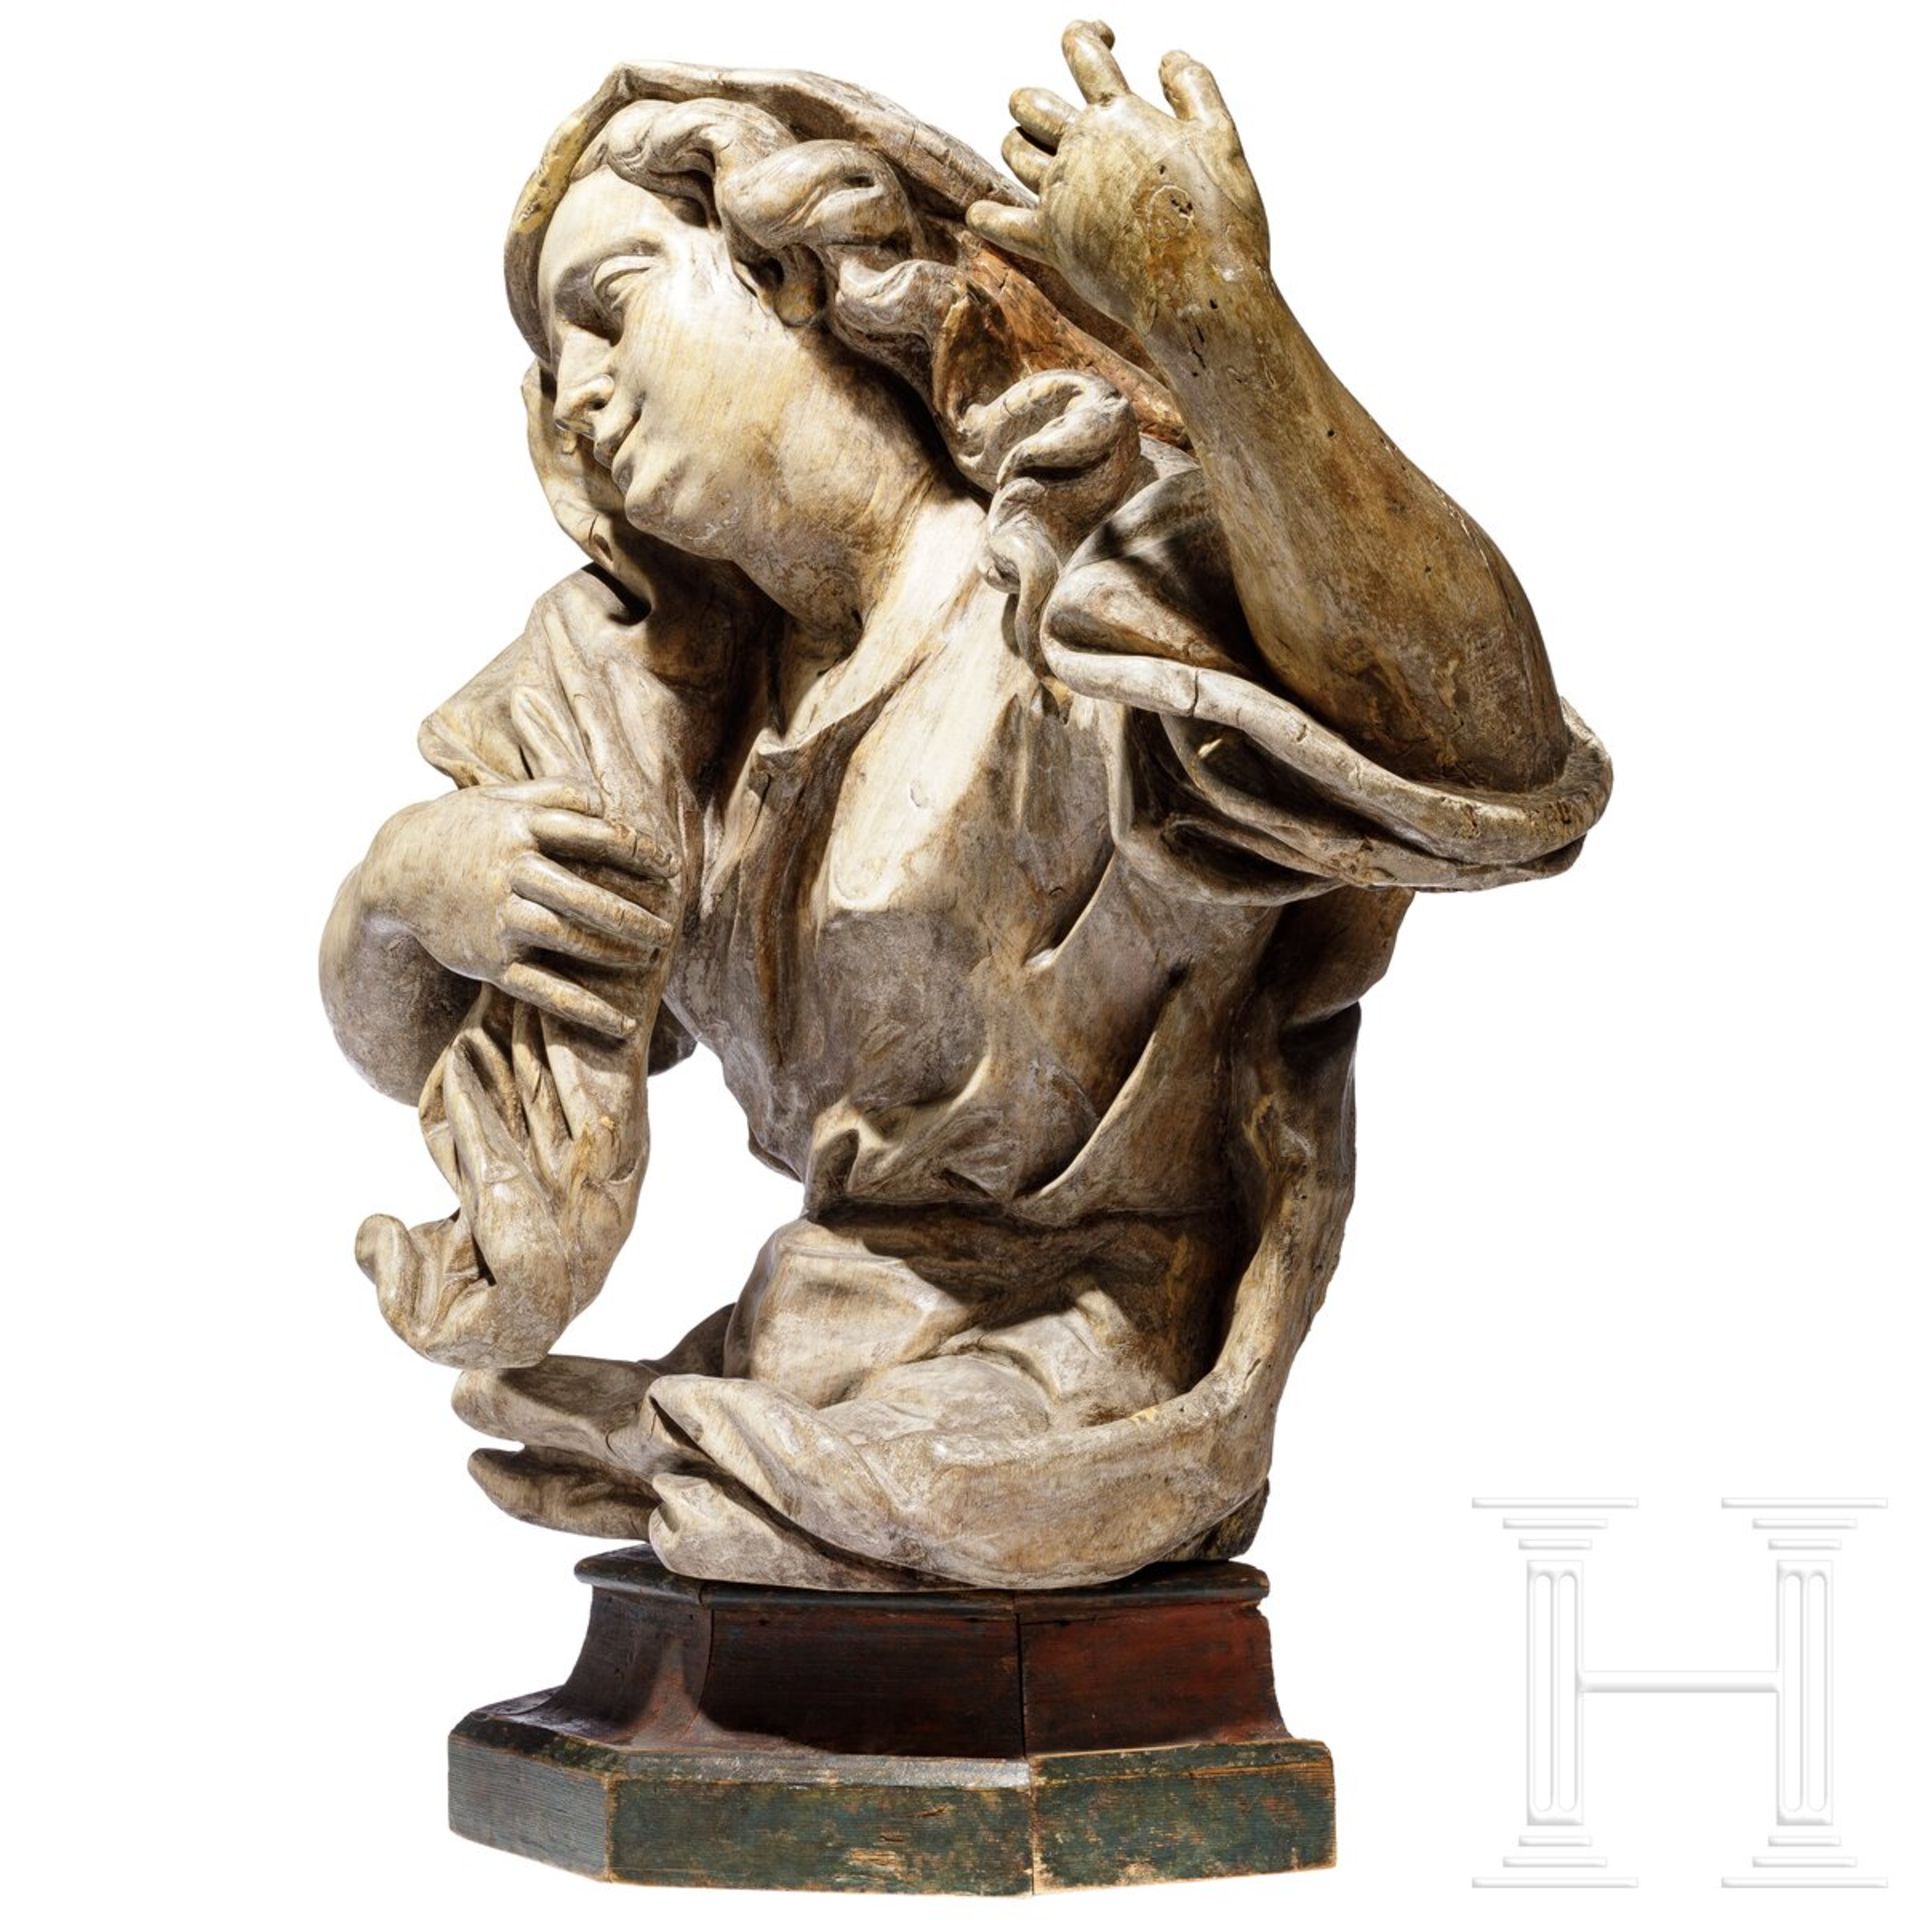 Holzfigur der Maria Magdalena, Italien, 1. Hälfte 18. Jhdt. - Bild 2 aus 6